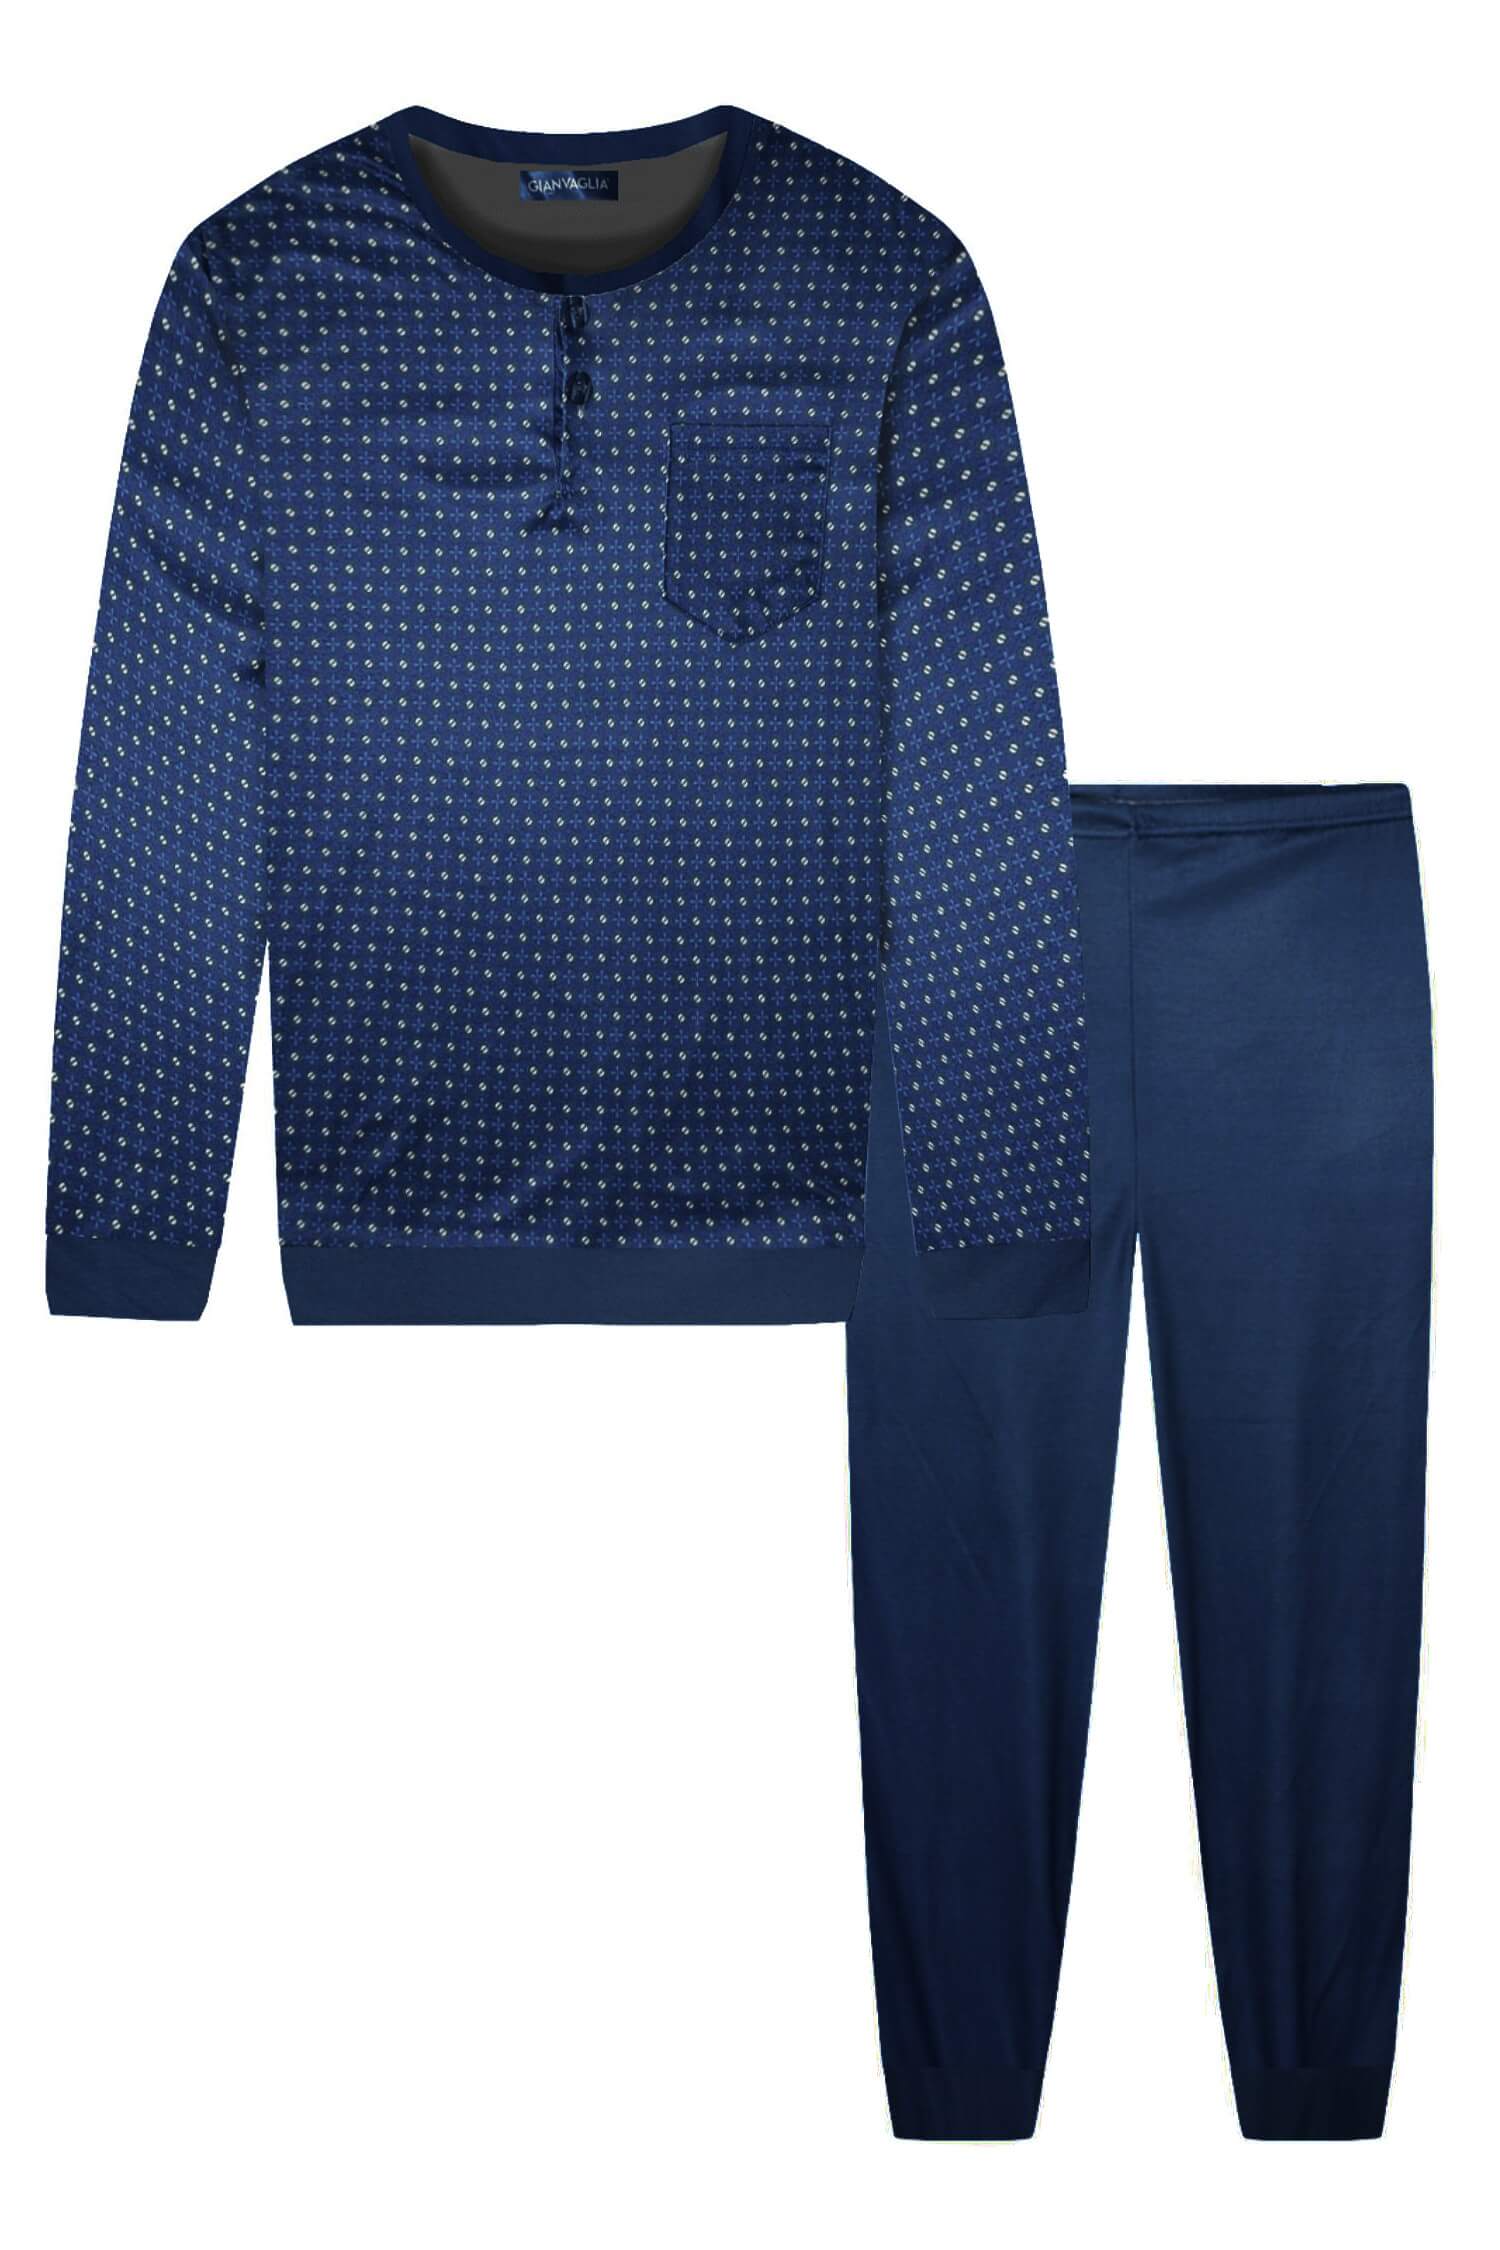 Cecil pánské pyžamo dlouhý rukáv 696 XL tmavě modrá